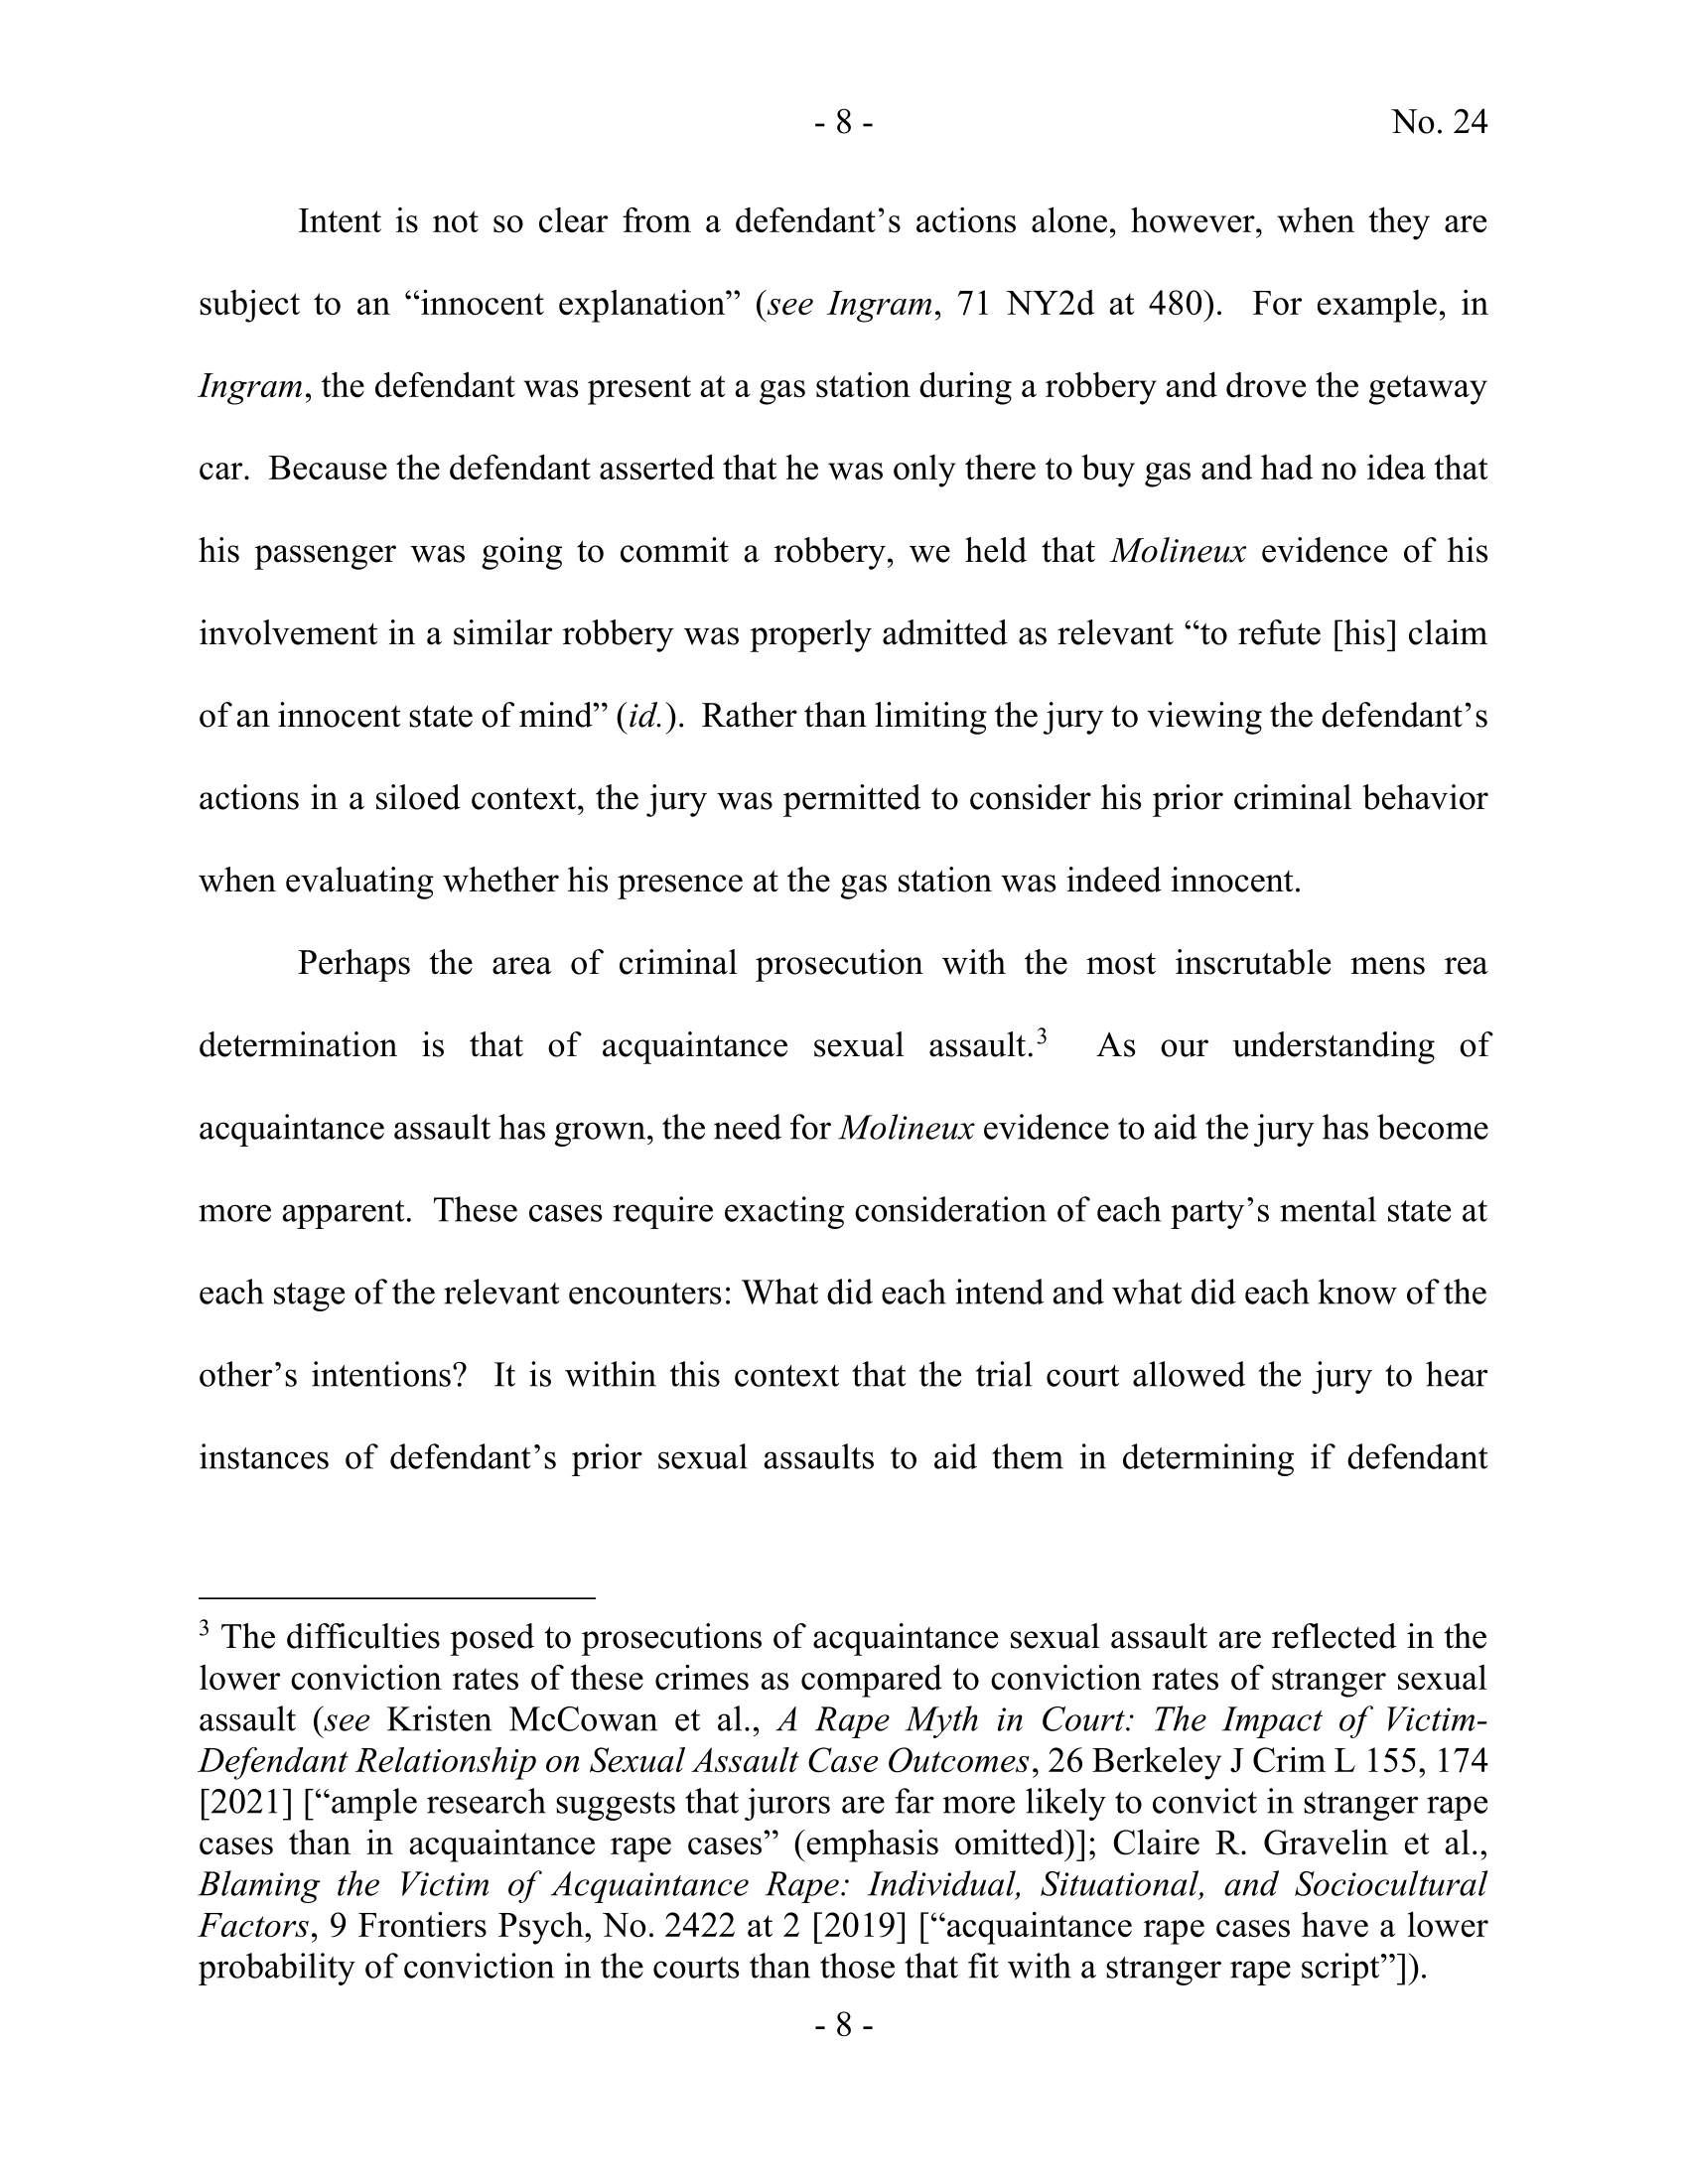 Seite 48 eines undefinierten PDF-Dokuments.